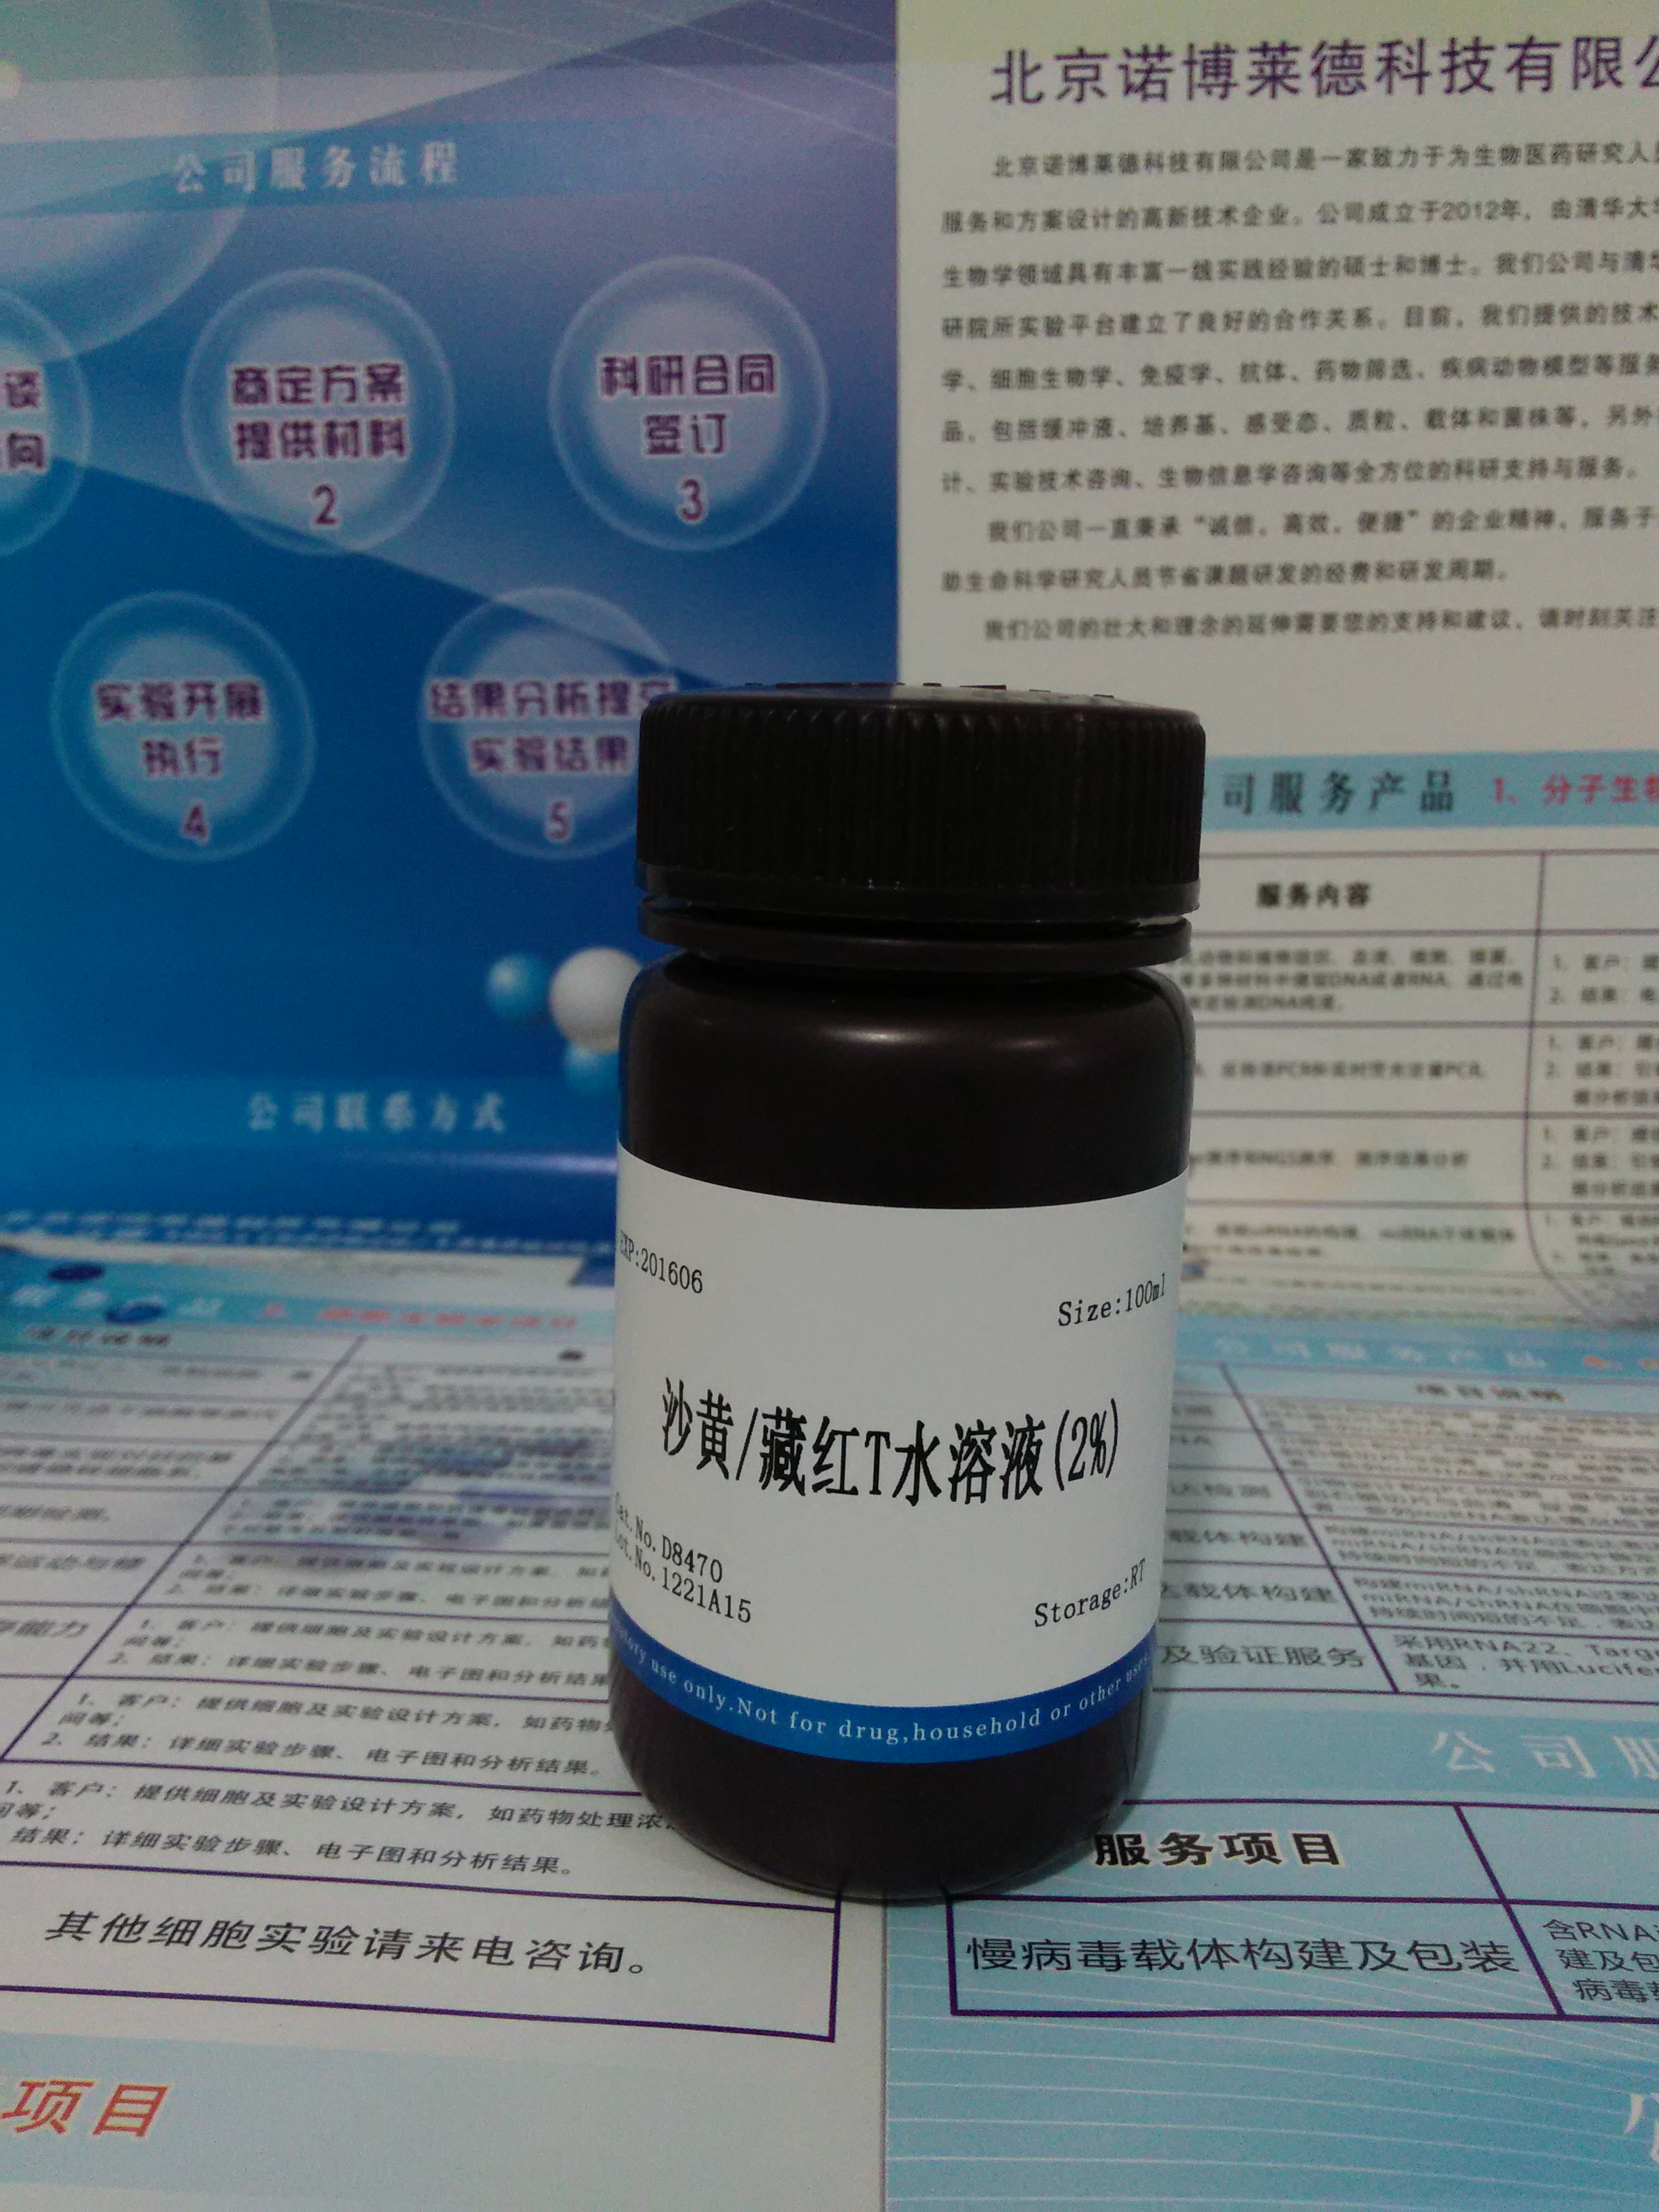 供应沙黄/藏红T水溶液(2%) NobleRyder D8470 染色剂 微生物染色 量大优惠 质量保证 100ml图片